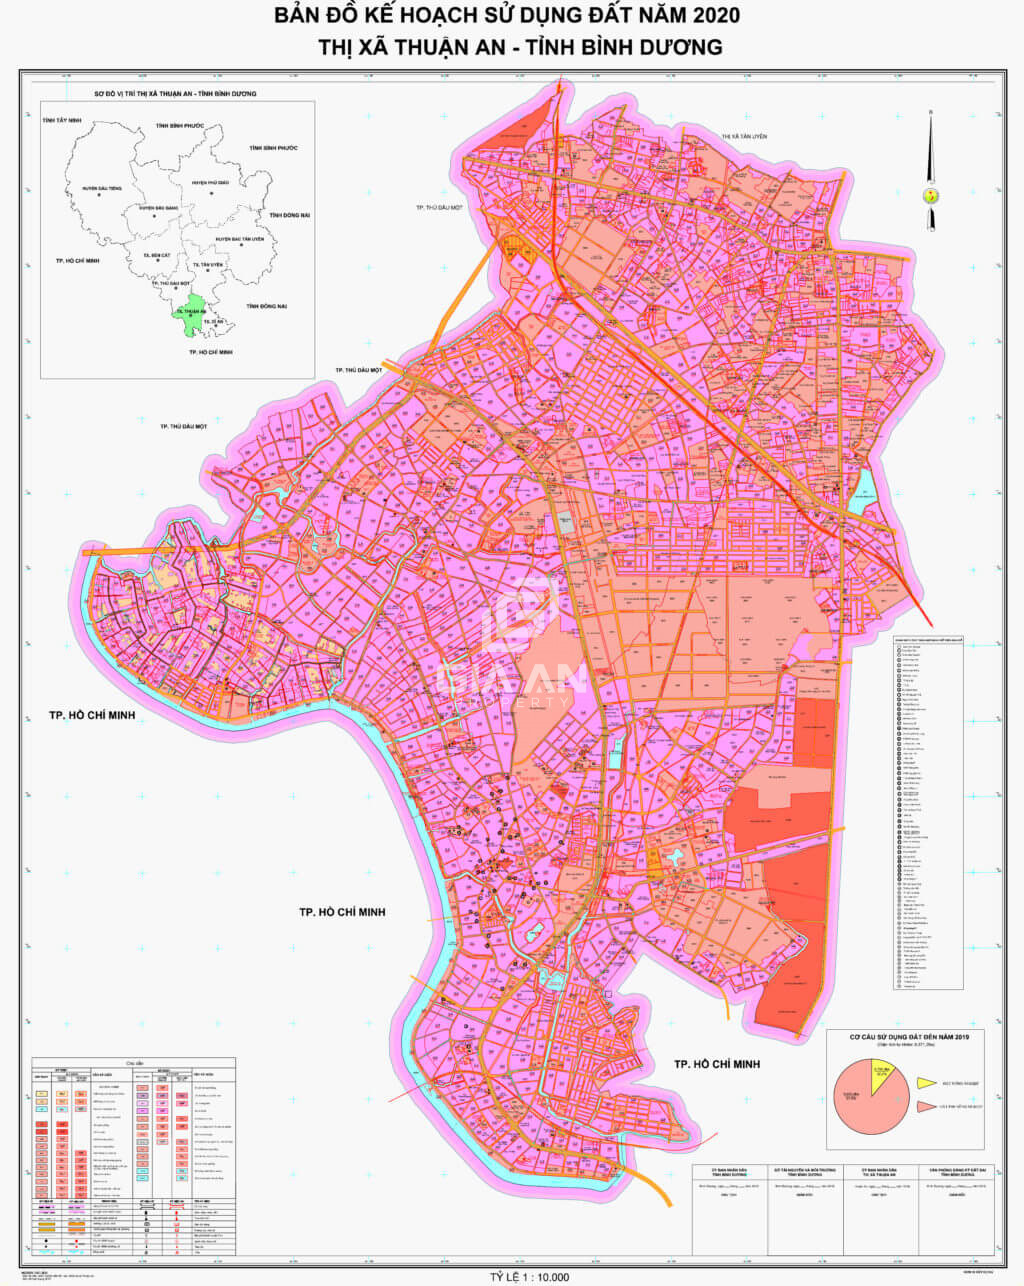 Bản đồ quy hoạch sử dụng đất thành phố Thuận An